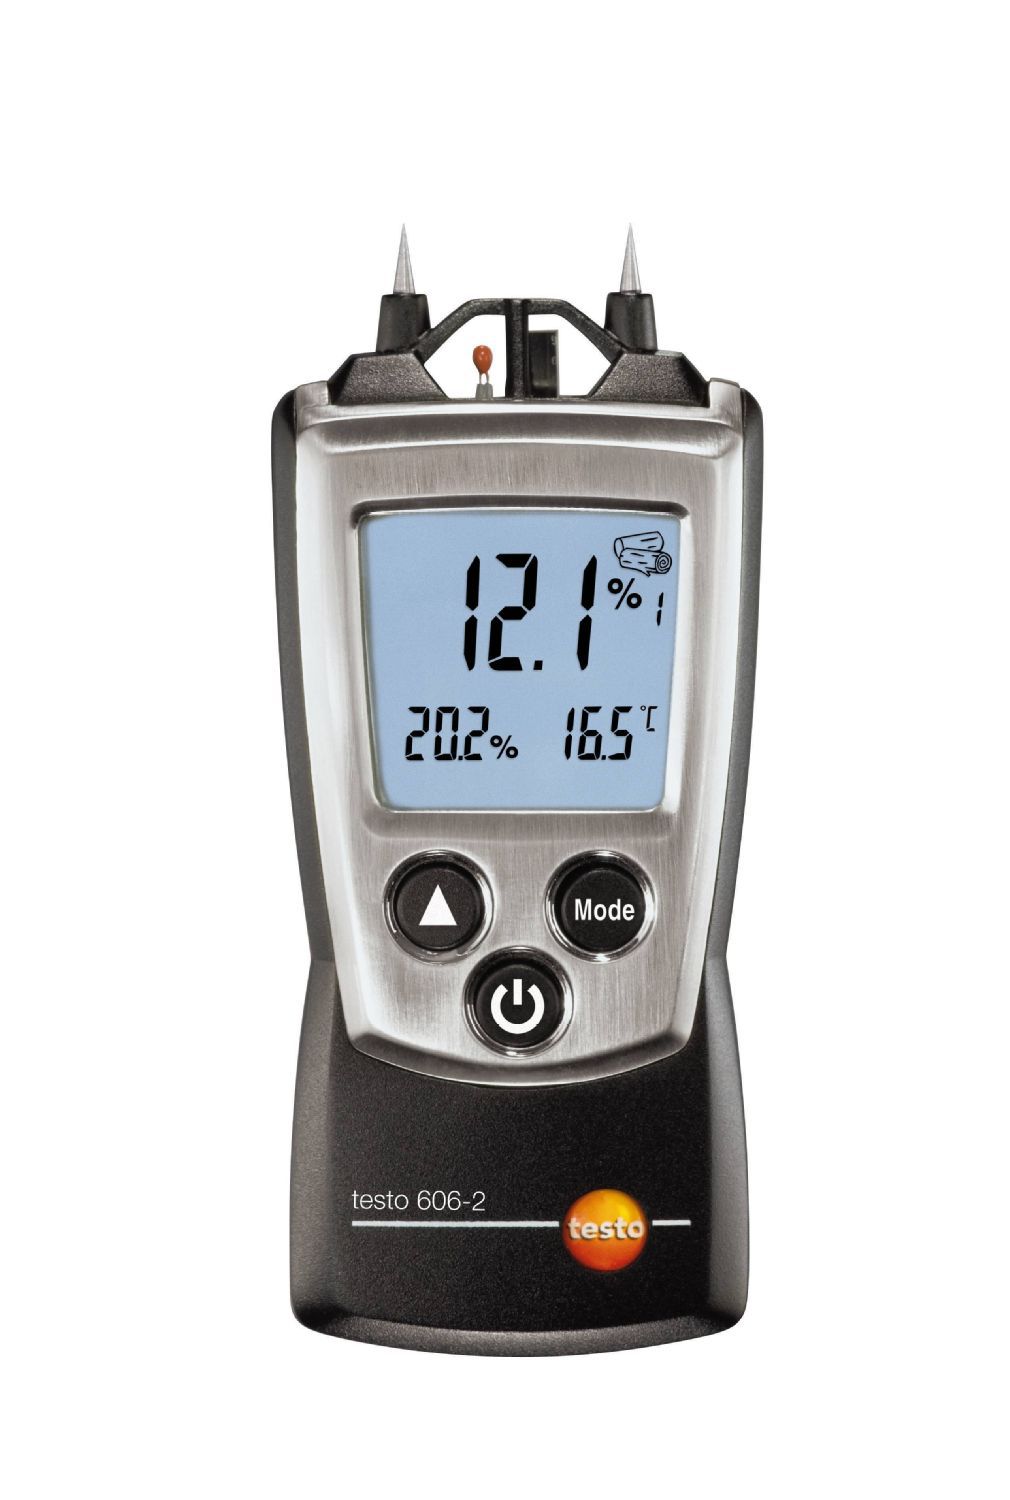 606-2 - Instrumento de bolso multi-medição umidade e temperatura